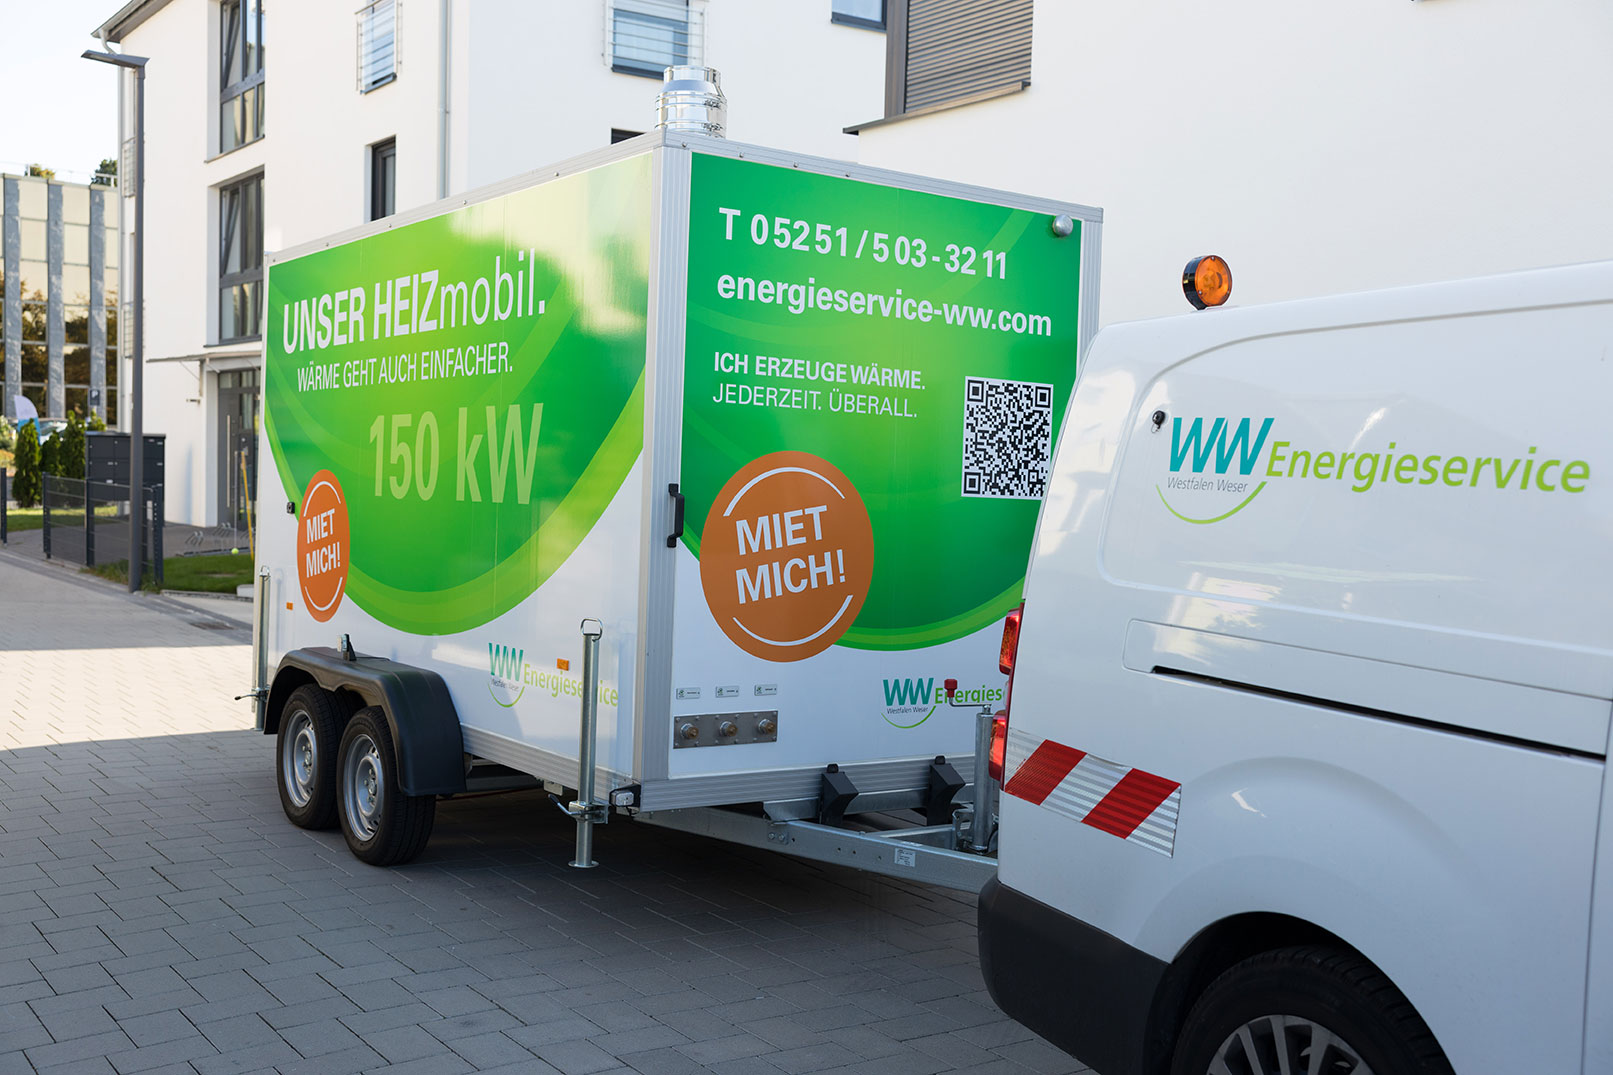 Anhänger in Wohnort Heizmobil Energieservice Westfalen Weser